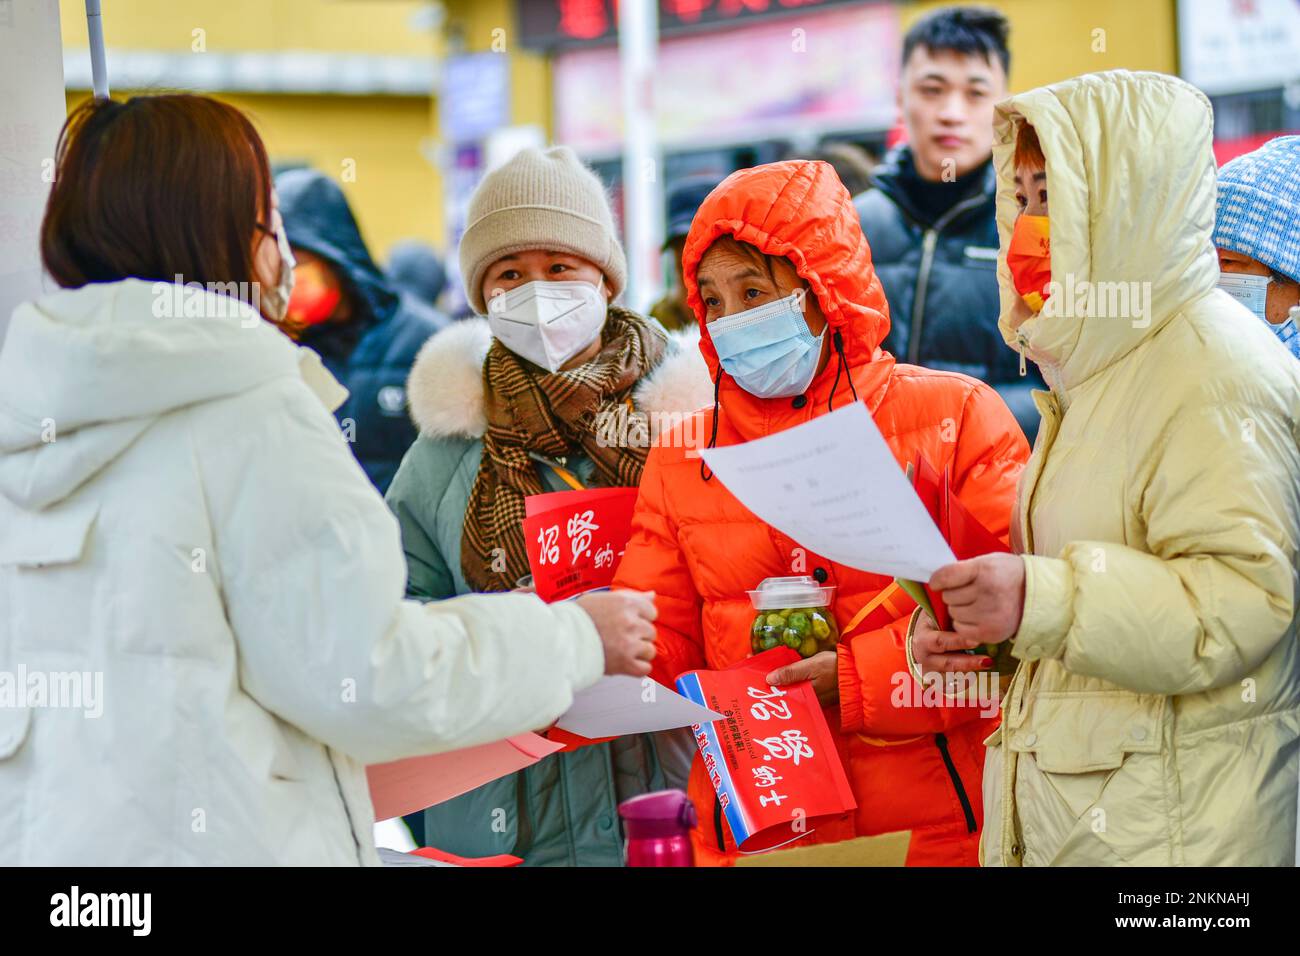 QINGZHOU, CINA - 24 FEBBRAIO 2023 - i cercatori di lavoro chiedono informazioni sull'occupazione in un mercato del lavoro a Qingzhou, provincia di Shandong della Cina orientale, 24 febbraio Foto Stock